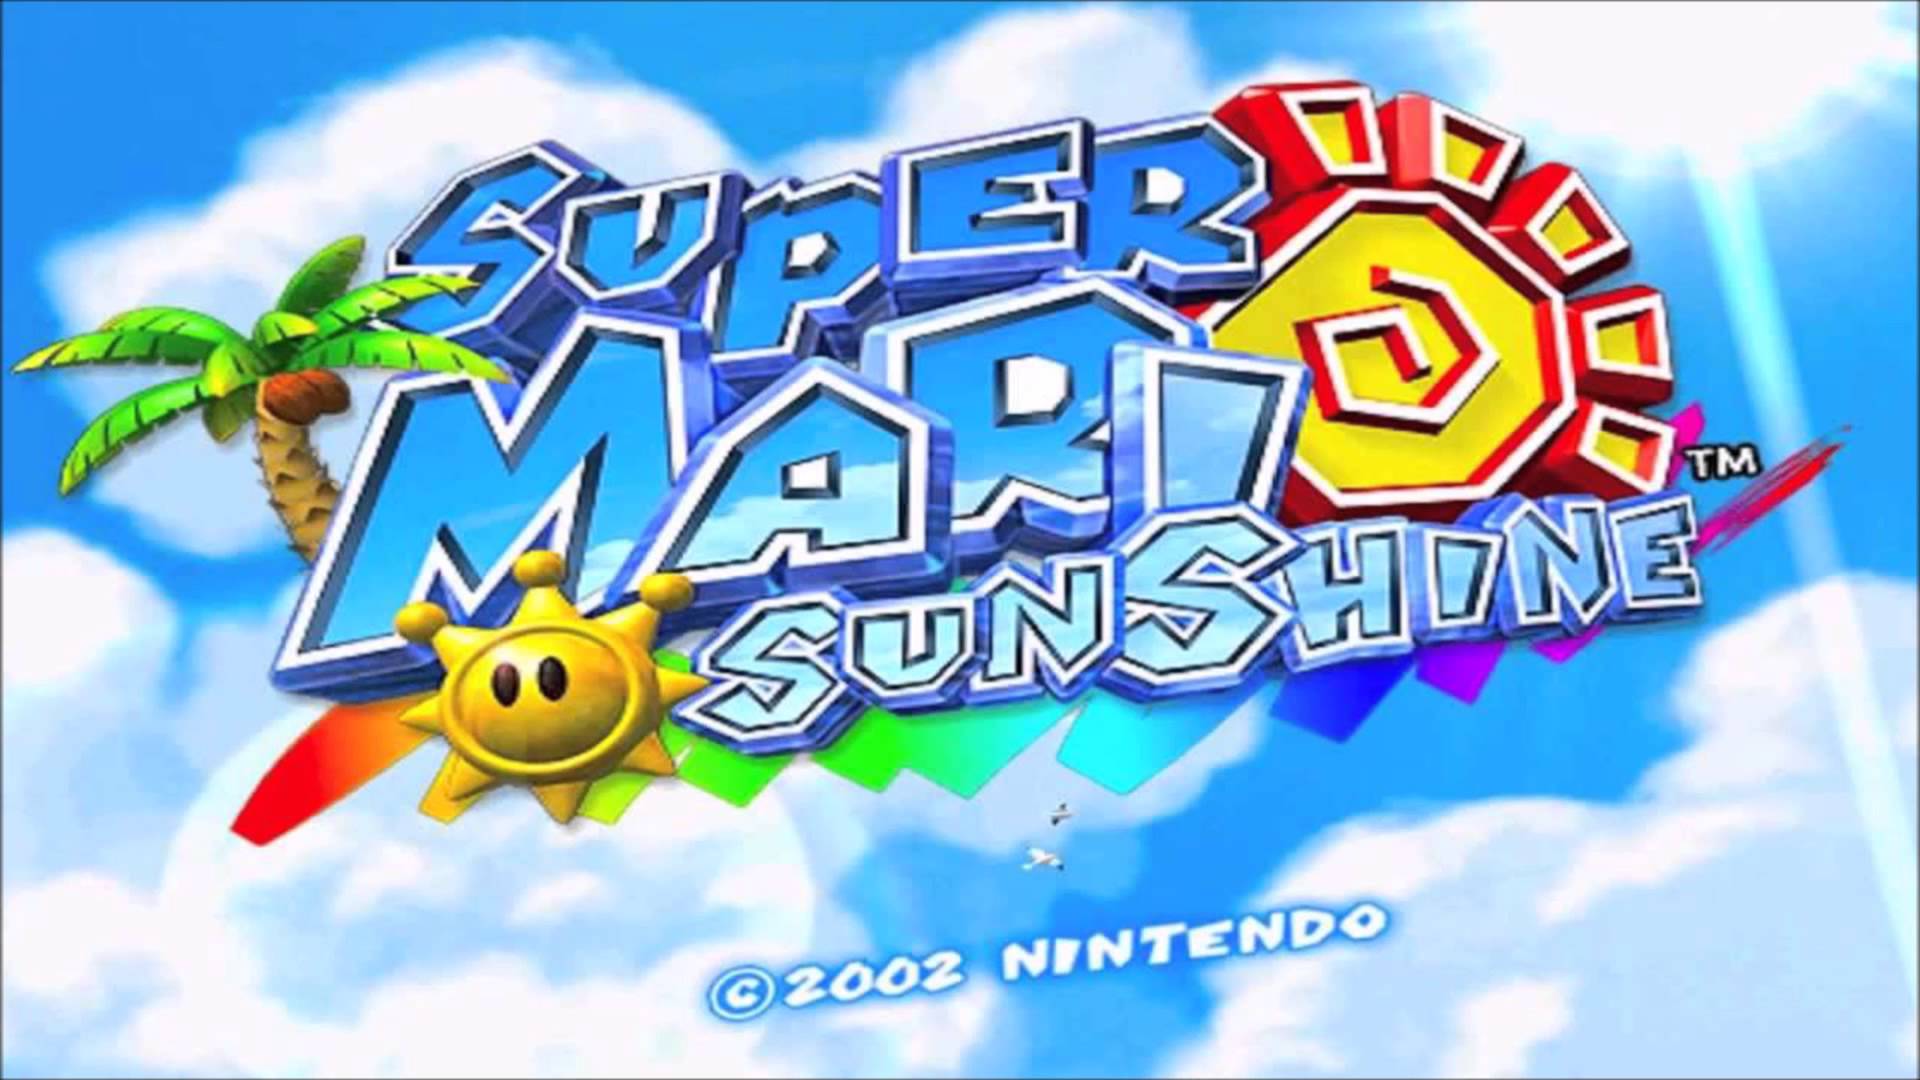 Super Mario Sunshine - Complete soundtrack - YouTube